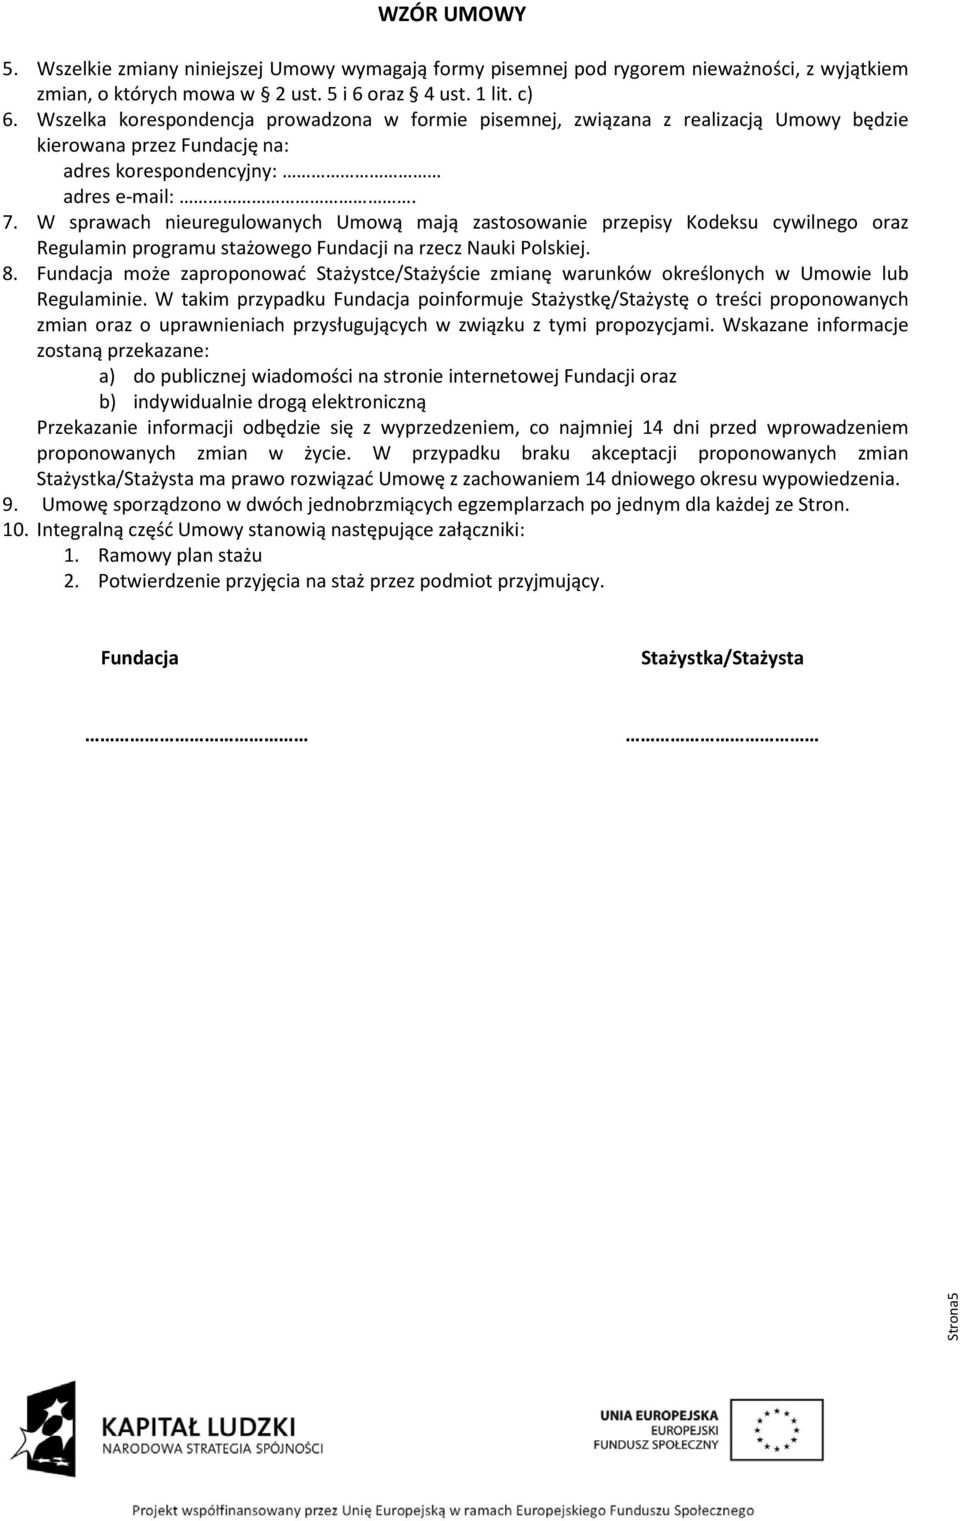 W sprawach nieuregulowanych Umową mają zastosowanie przepisy Kodeksu cywilnego oraz Regulamin programu stażowego Fundacji na rzecz Nauki Polskiej. 8.